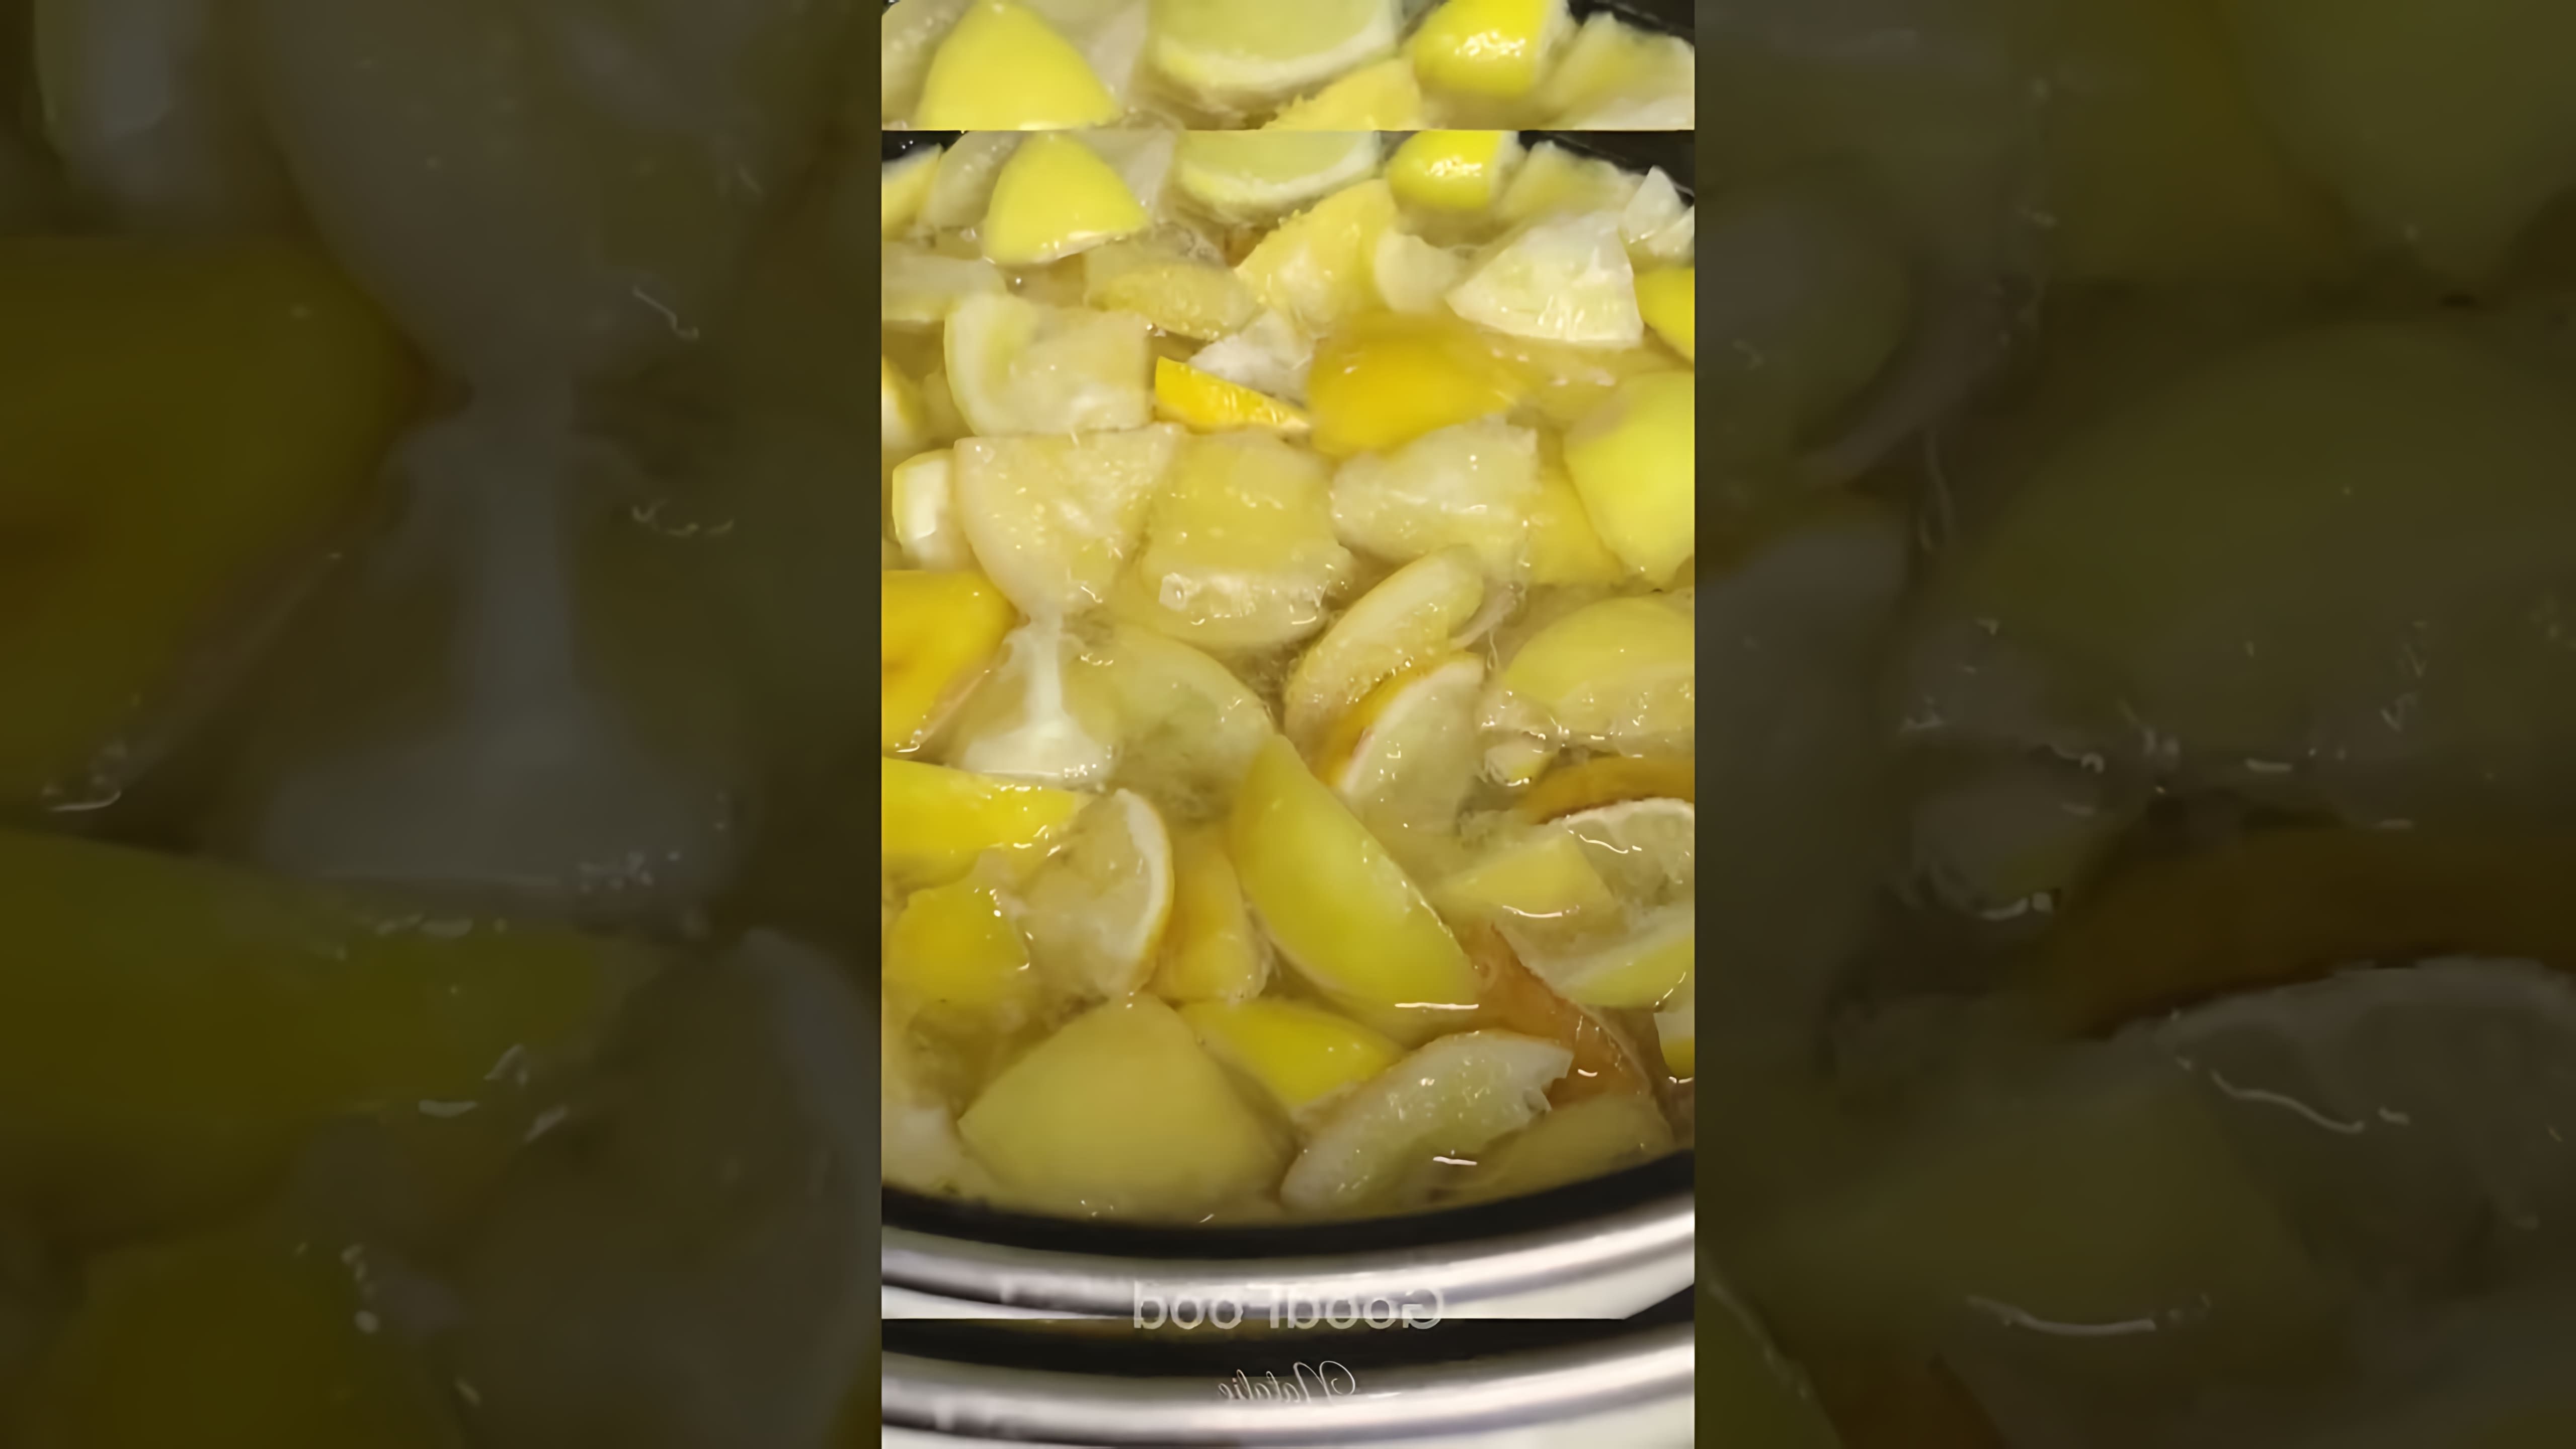 Видео рассказывает о том, как приготовить джем из оставшихся лимонов после отжима sока